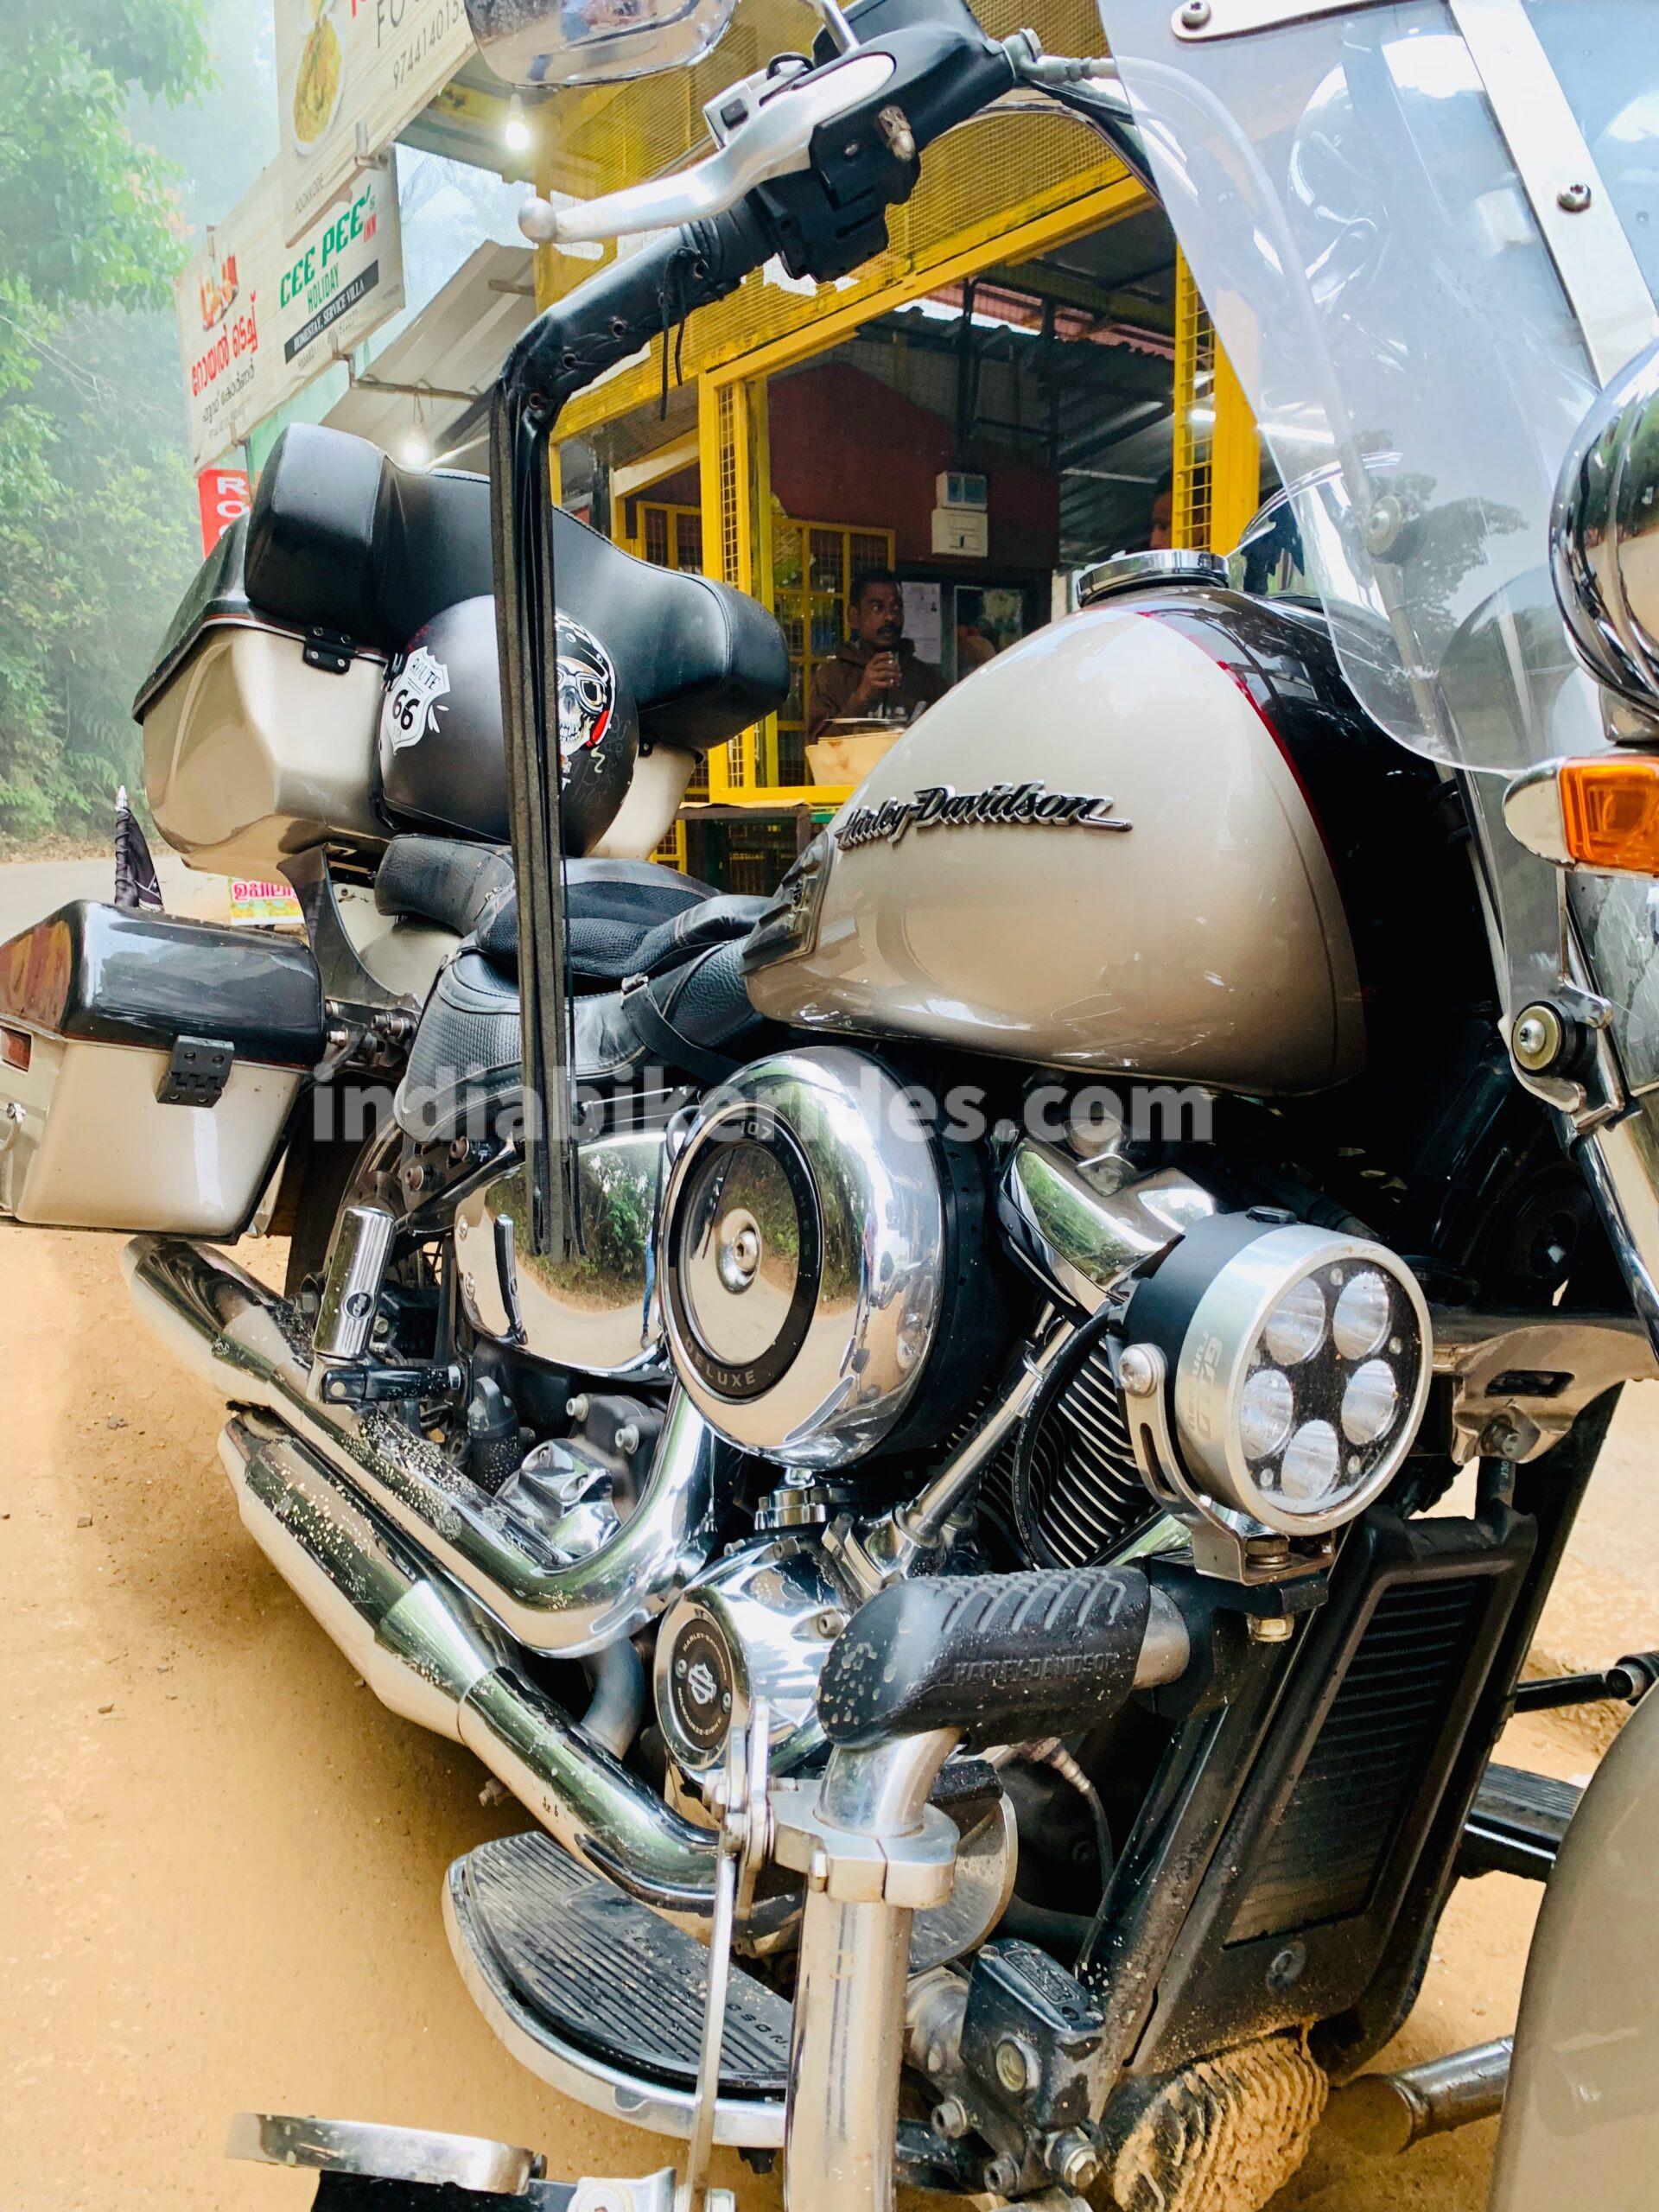 Harley Davidson, Wayanad, Kerala,  India Bike rides